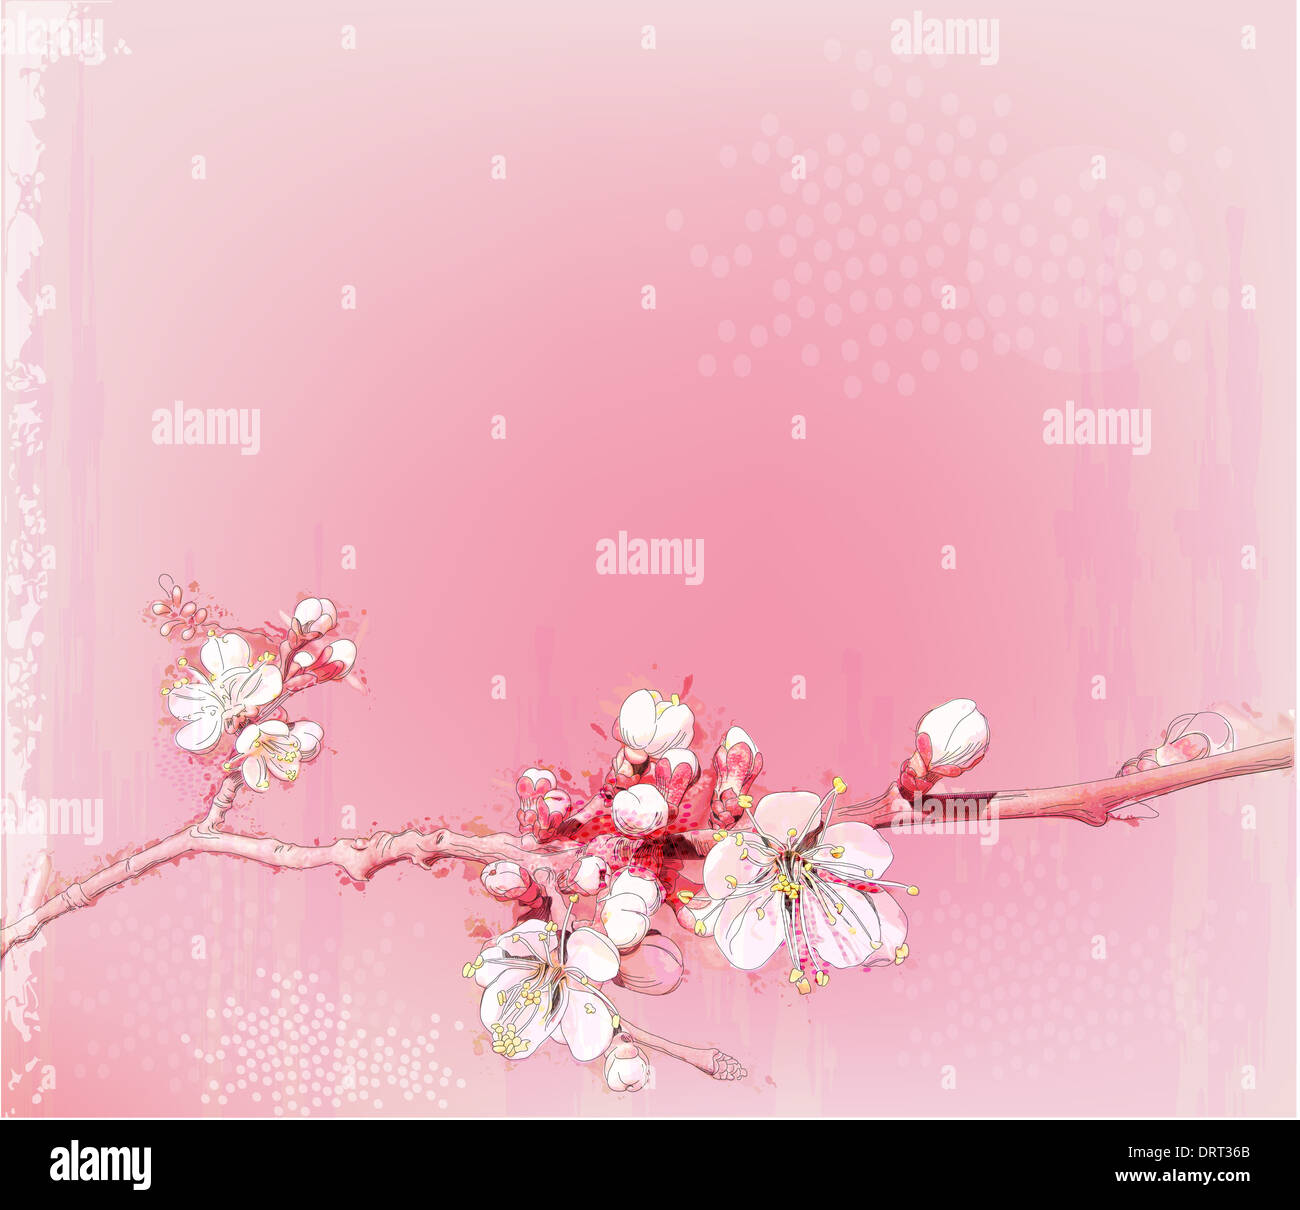 Giapponese di fiori di ciliegio in piena fioritura Foto Stock